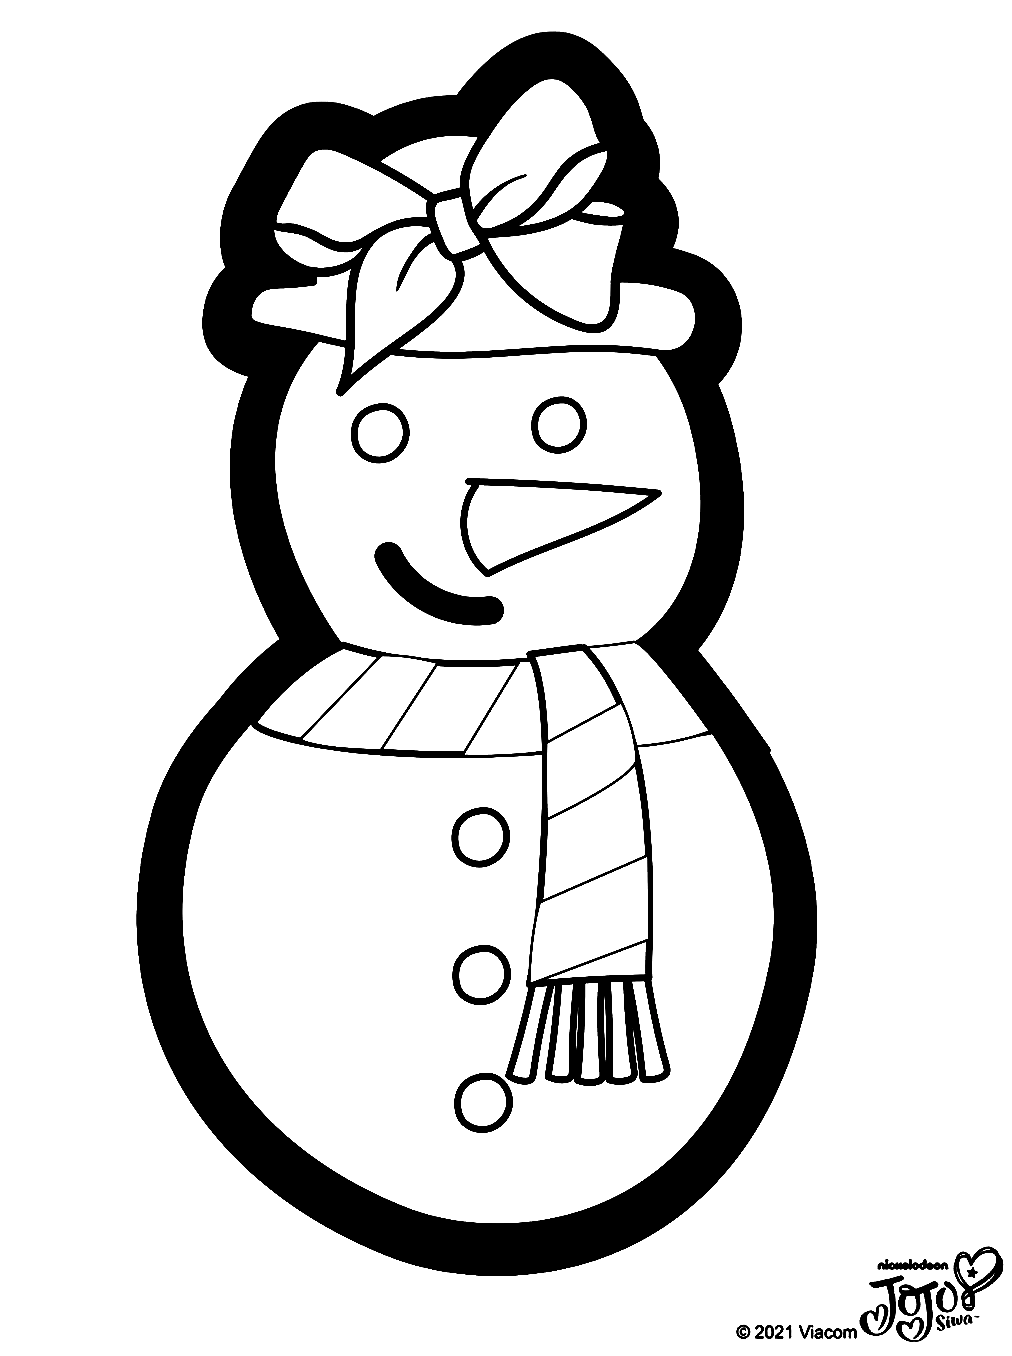 Раскраска Снеговик с бантиком из волос Джоджо Сива